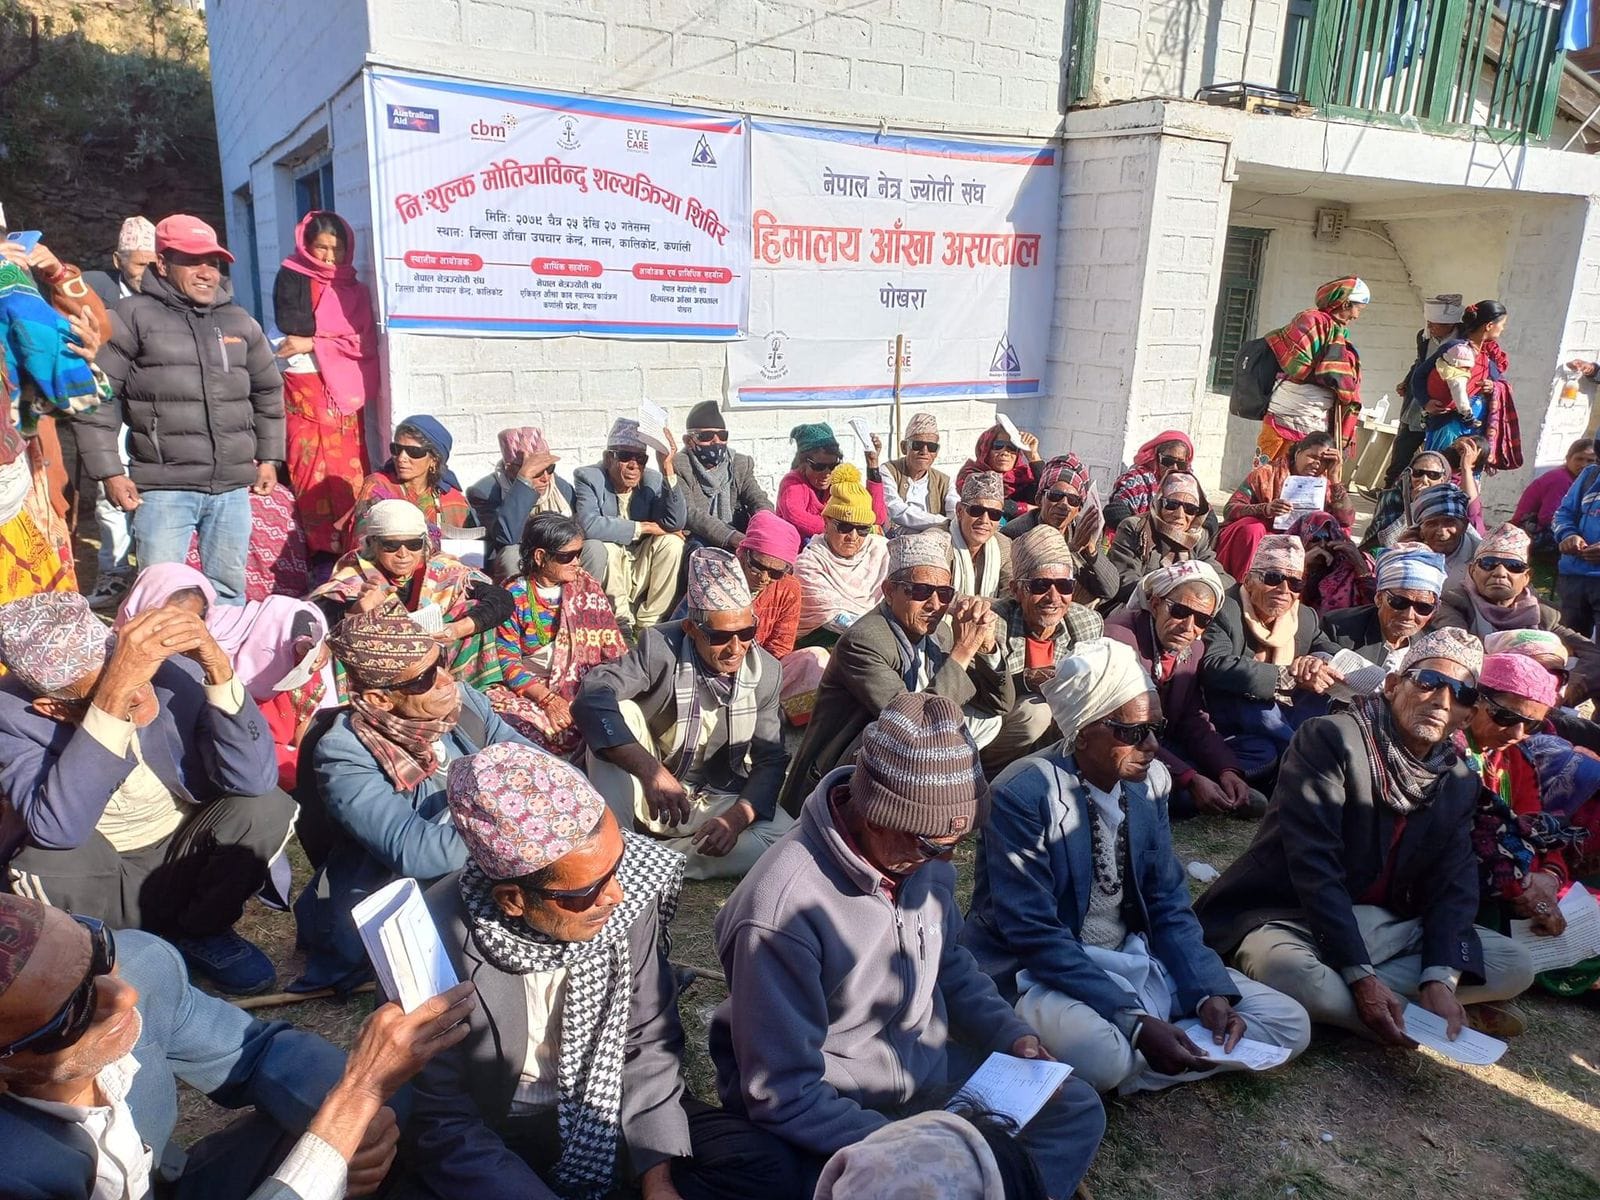 Netra Jyoti Sangh’s free eye camps in Humla & Kalikot, 1,688 eye checkups